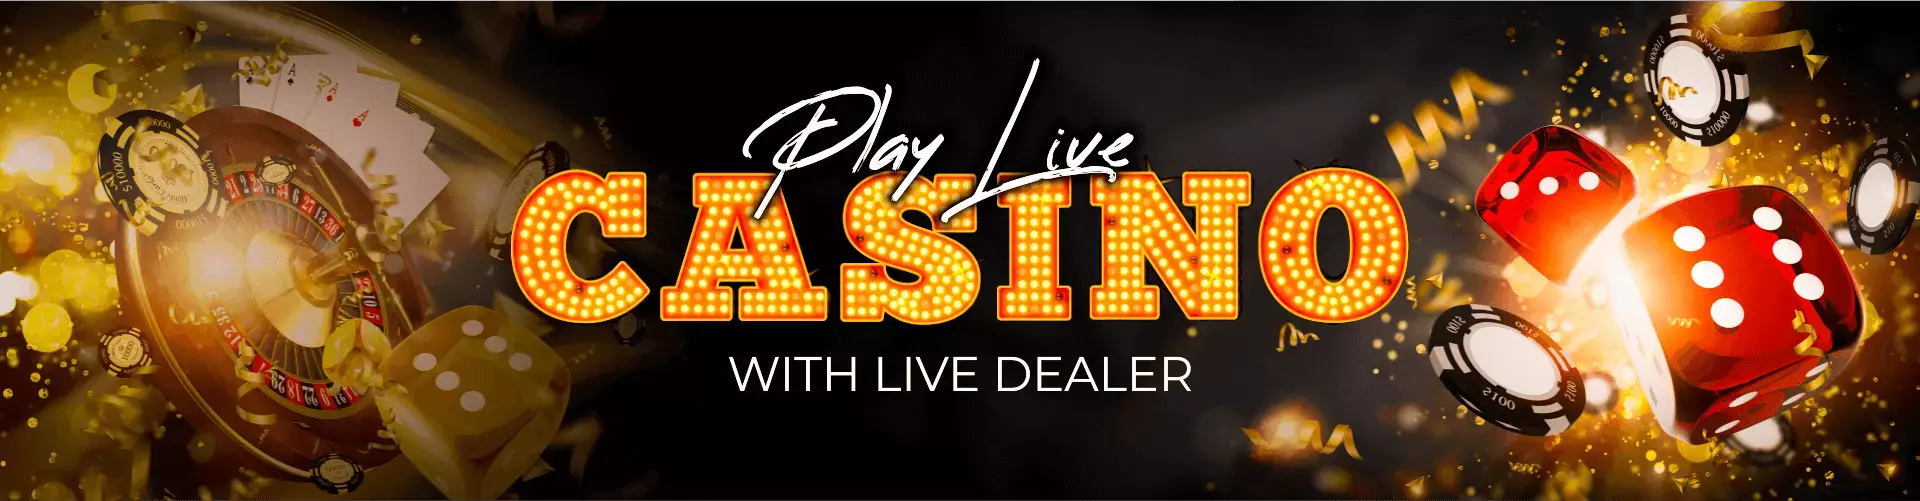 Casino_Banner